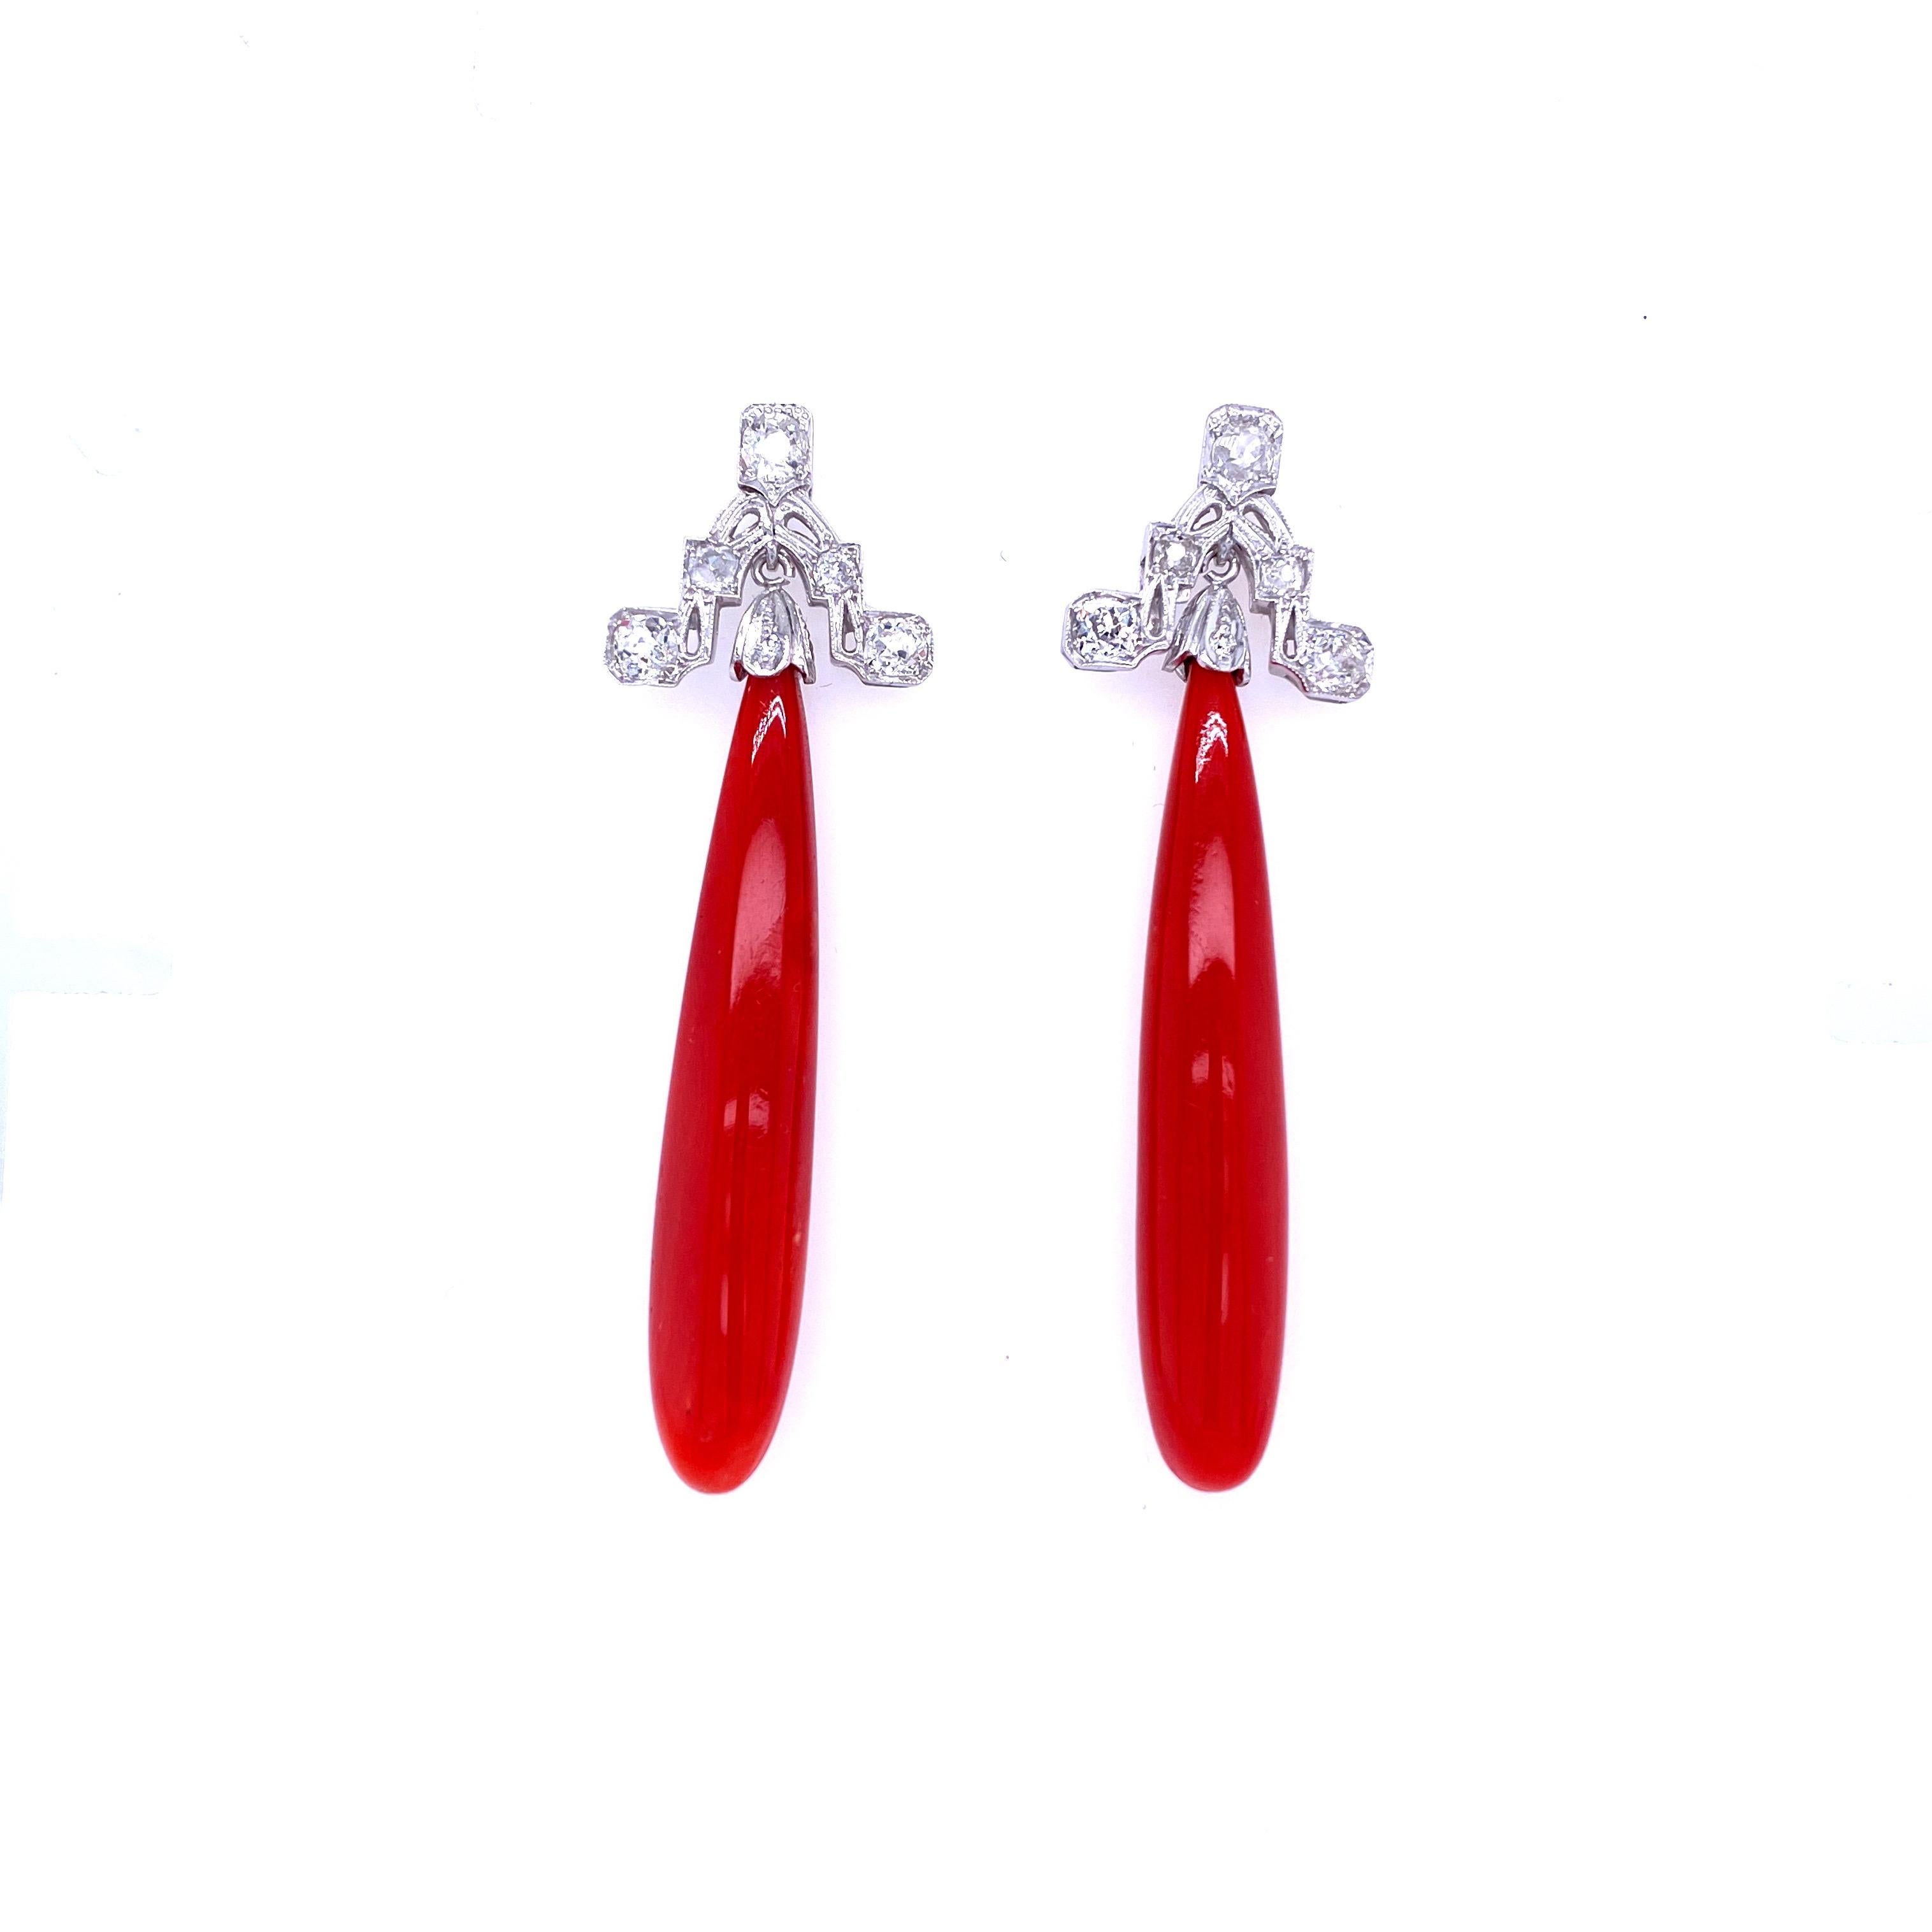 sardinian earrings